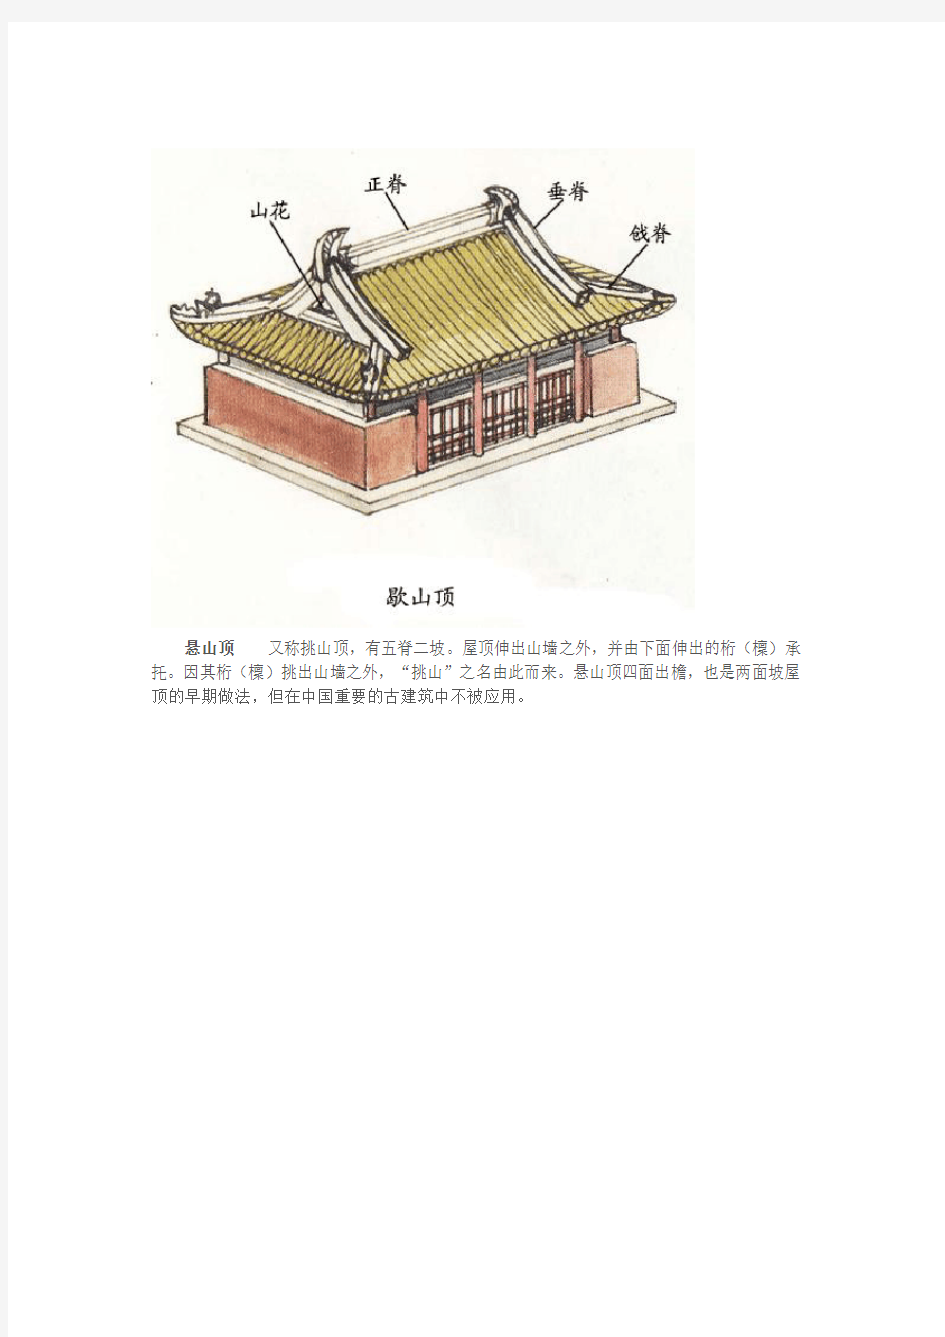 【中式元素】中国古建筑的屋顶形式